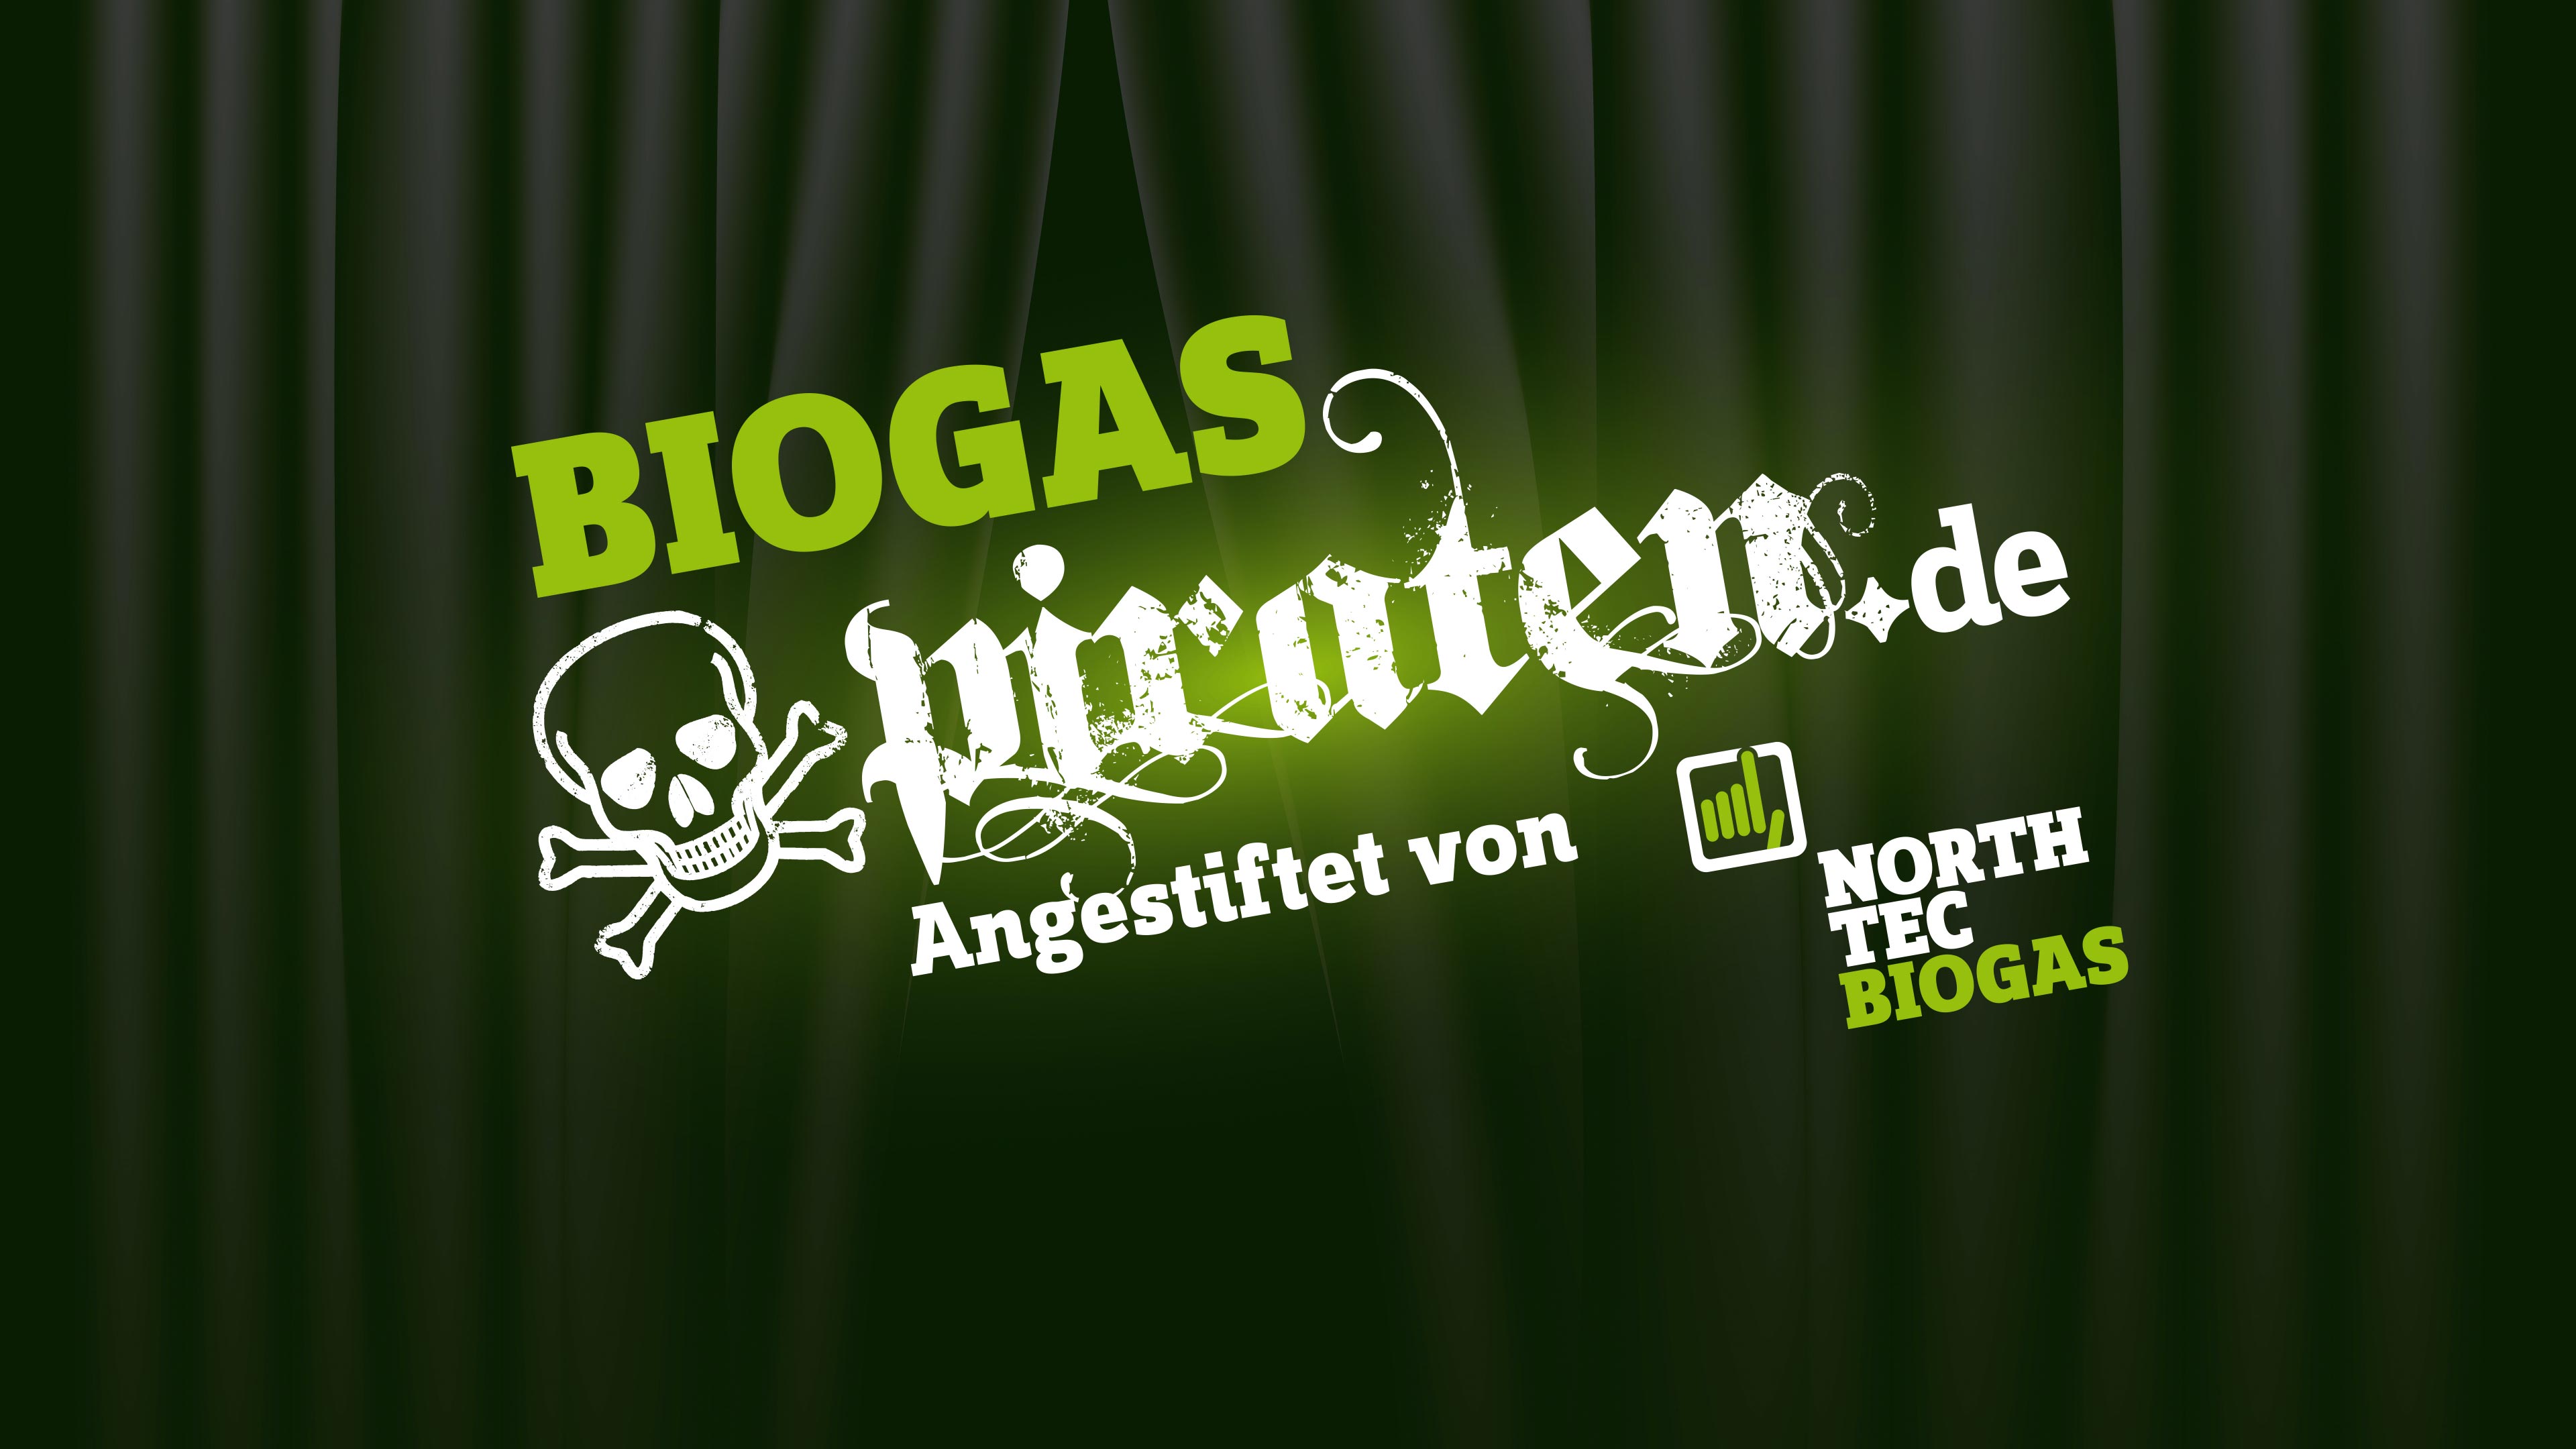 URL der Biogas Piraten